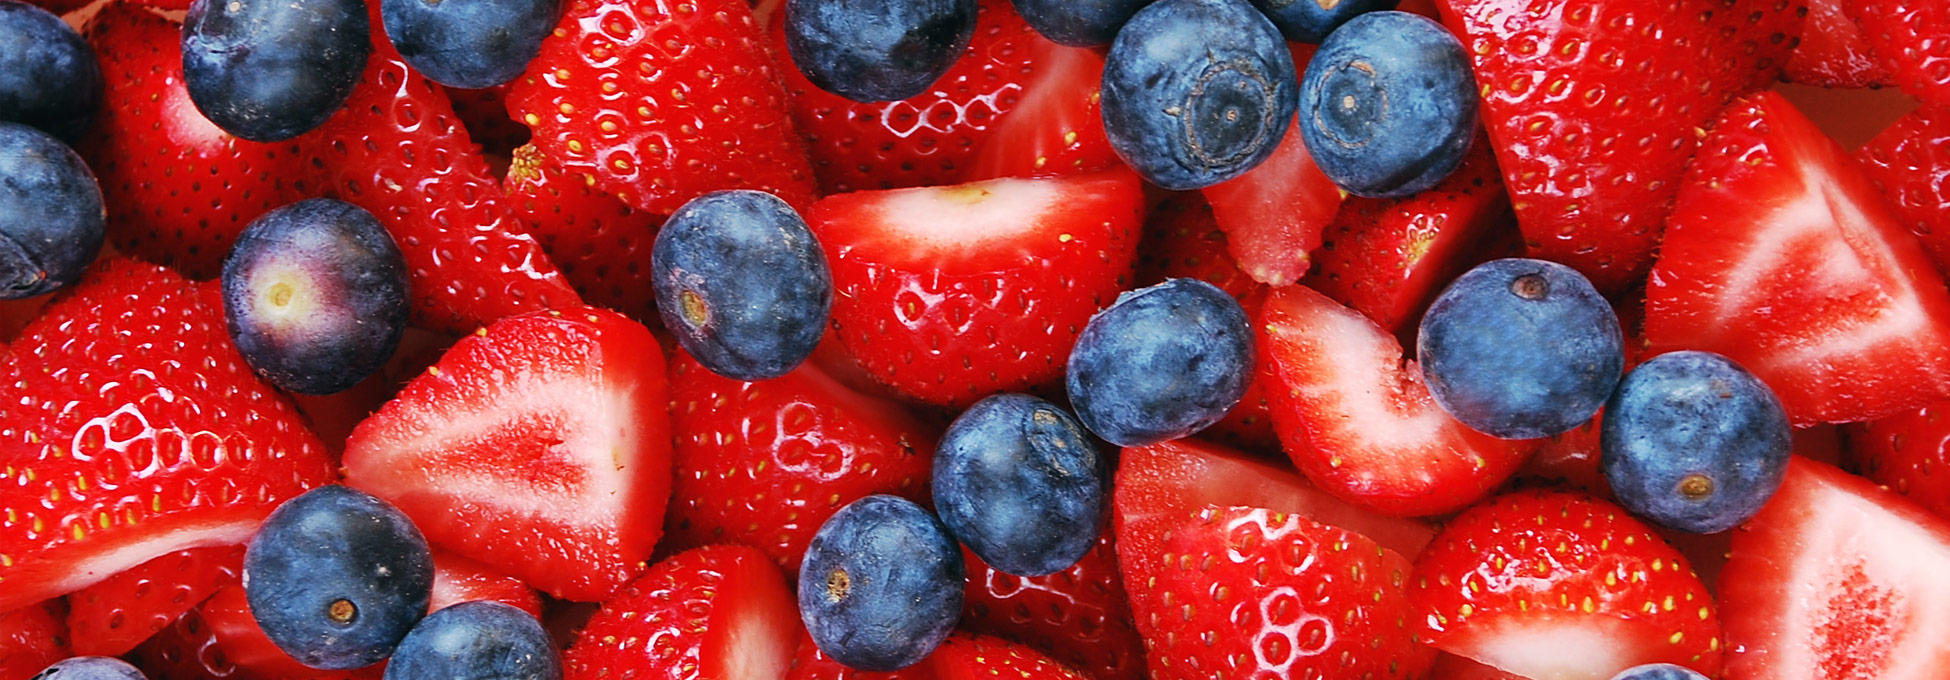 trigs-homepg-strawberries-blueberries.jpg